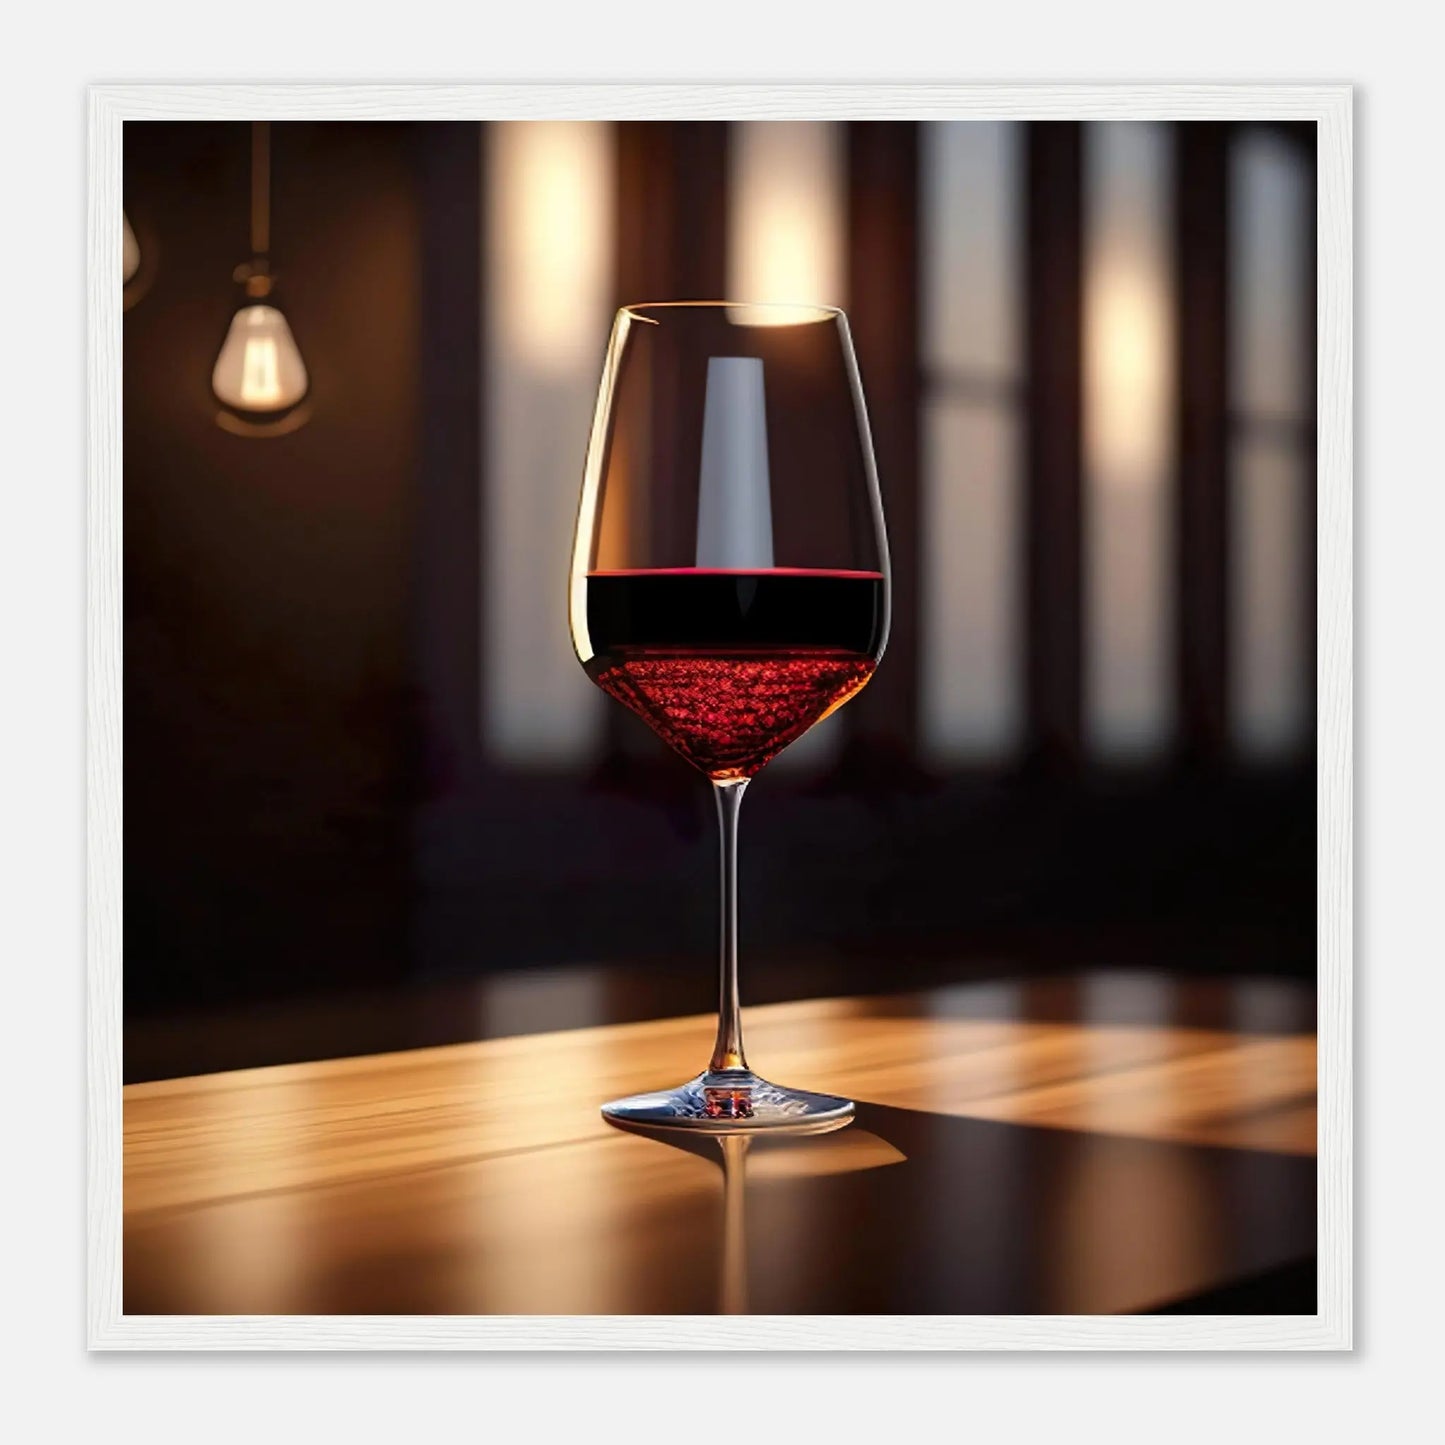 Gerahmtes Premium-Poster - Rotwein im Glas - Foto Stil, KI-Kunst - RolConArt, Kreative Vielfalt, 50x50-cm-20x20-Weißer-Rahmen